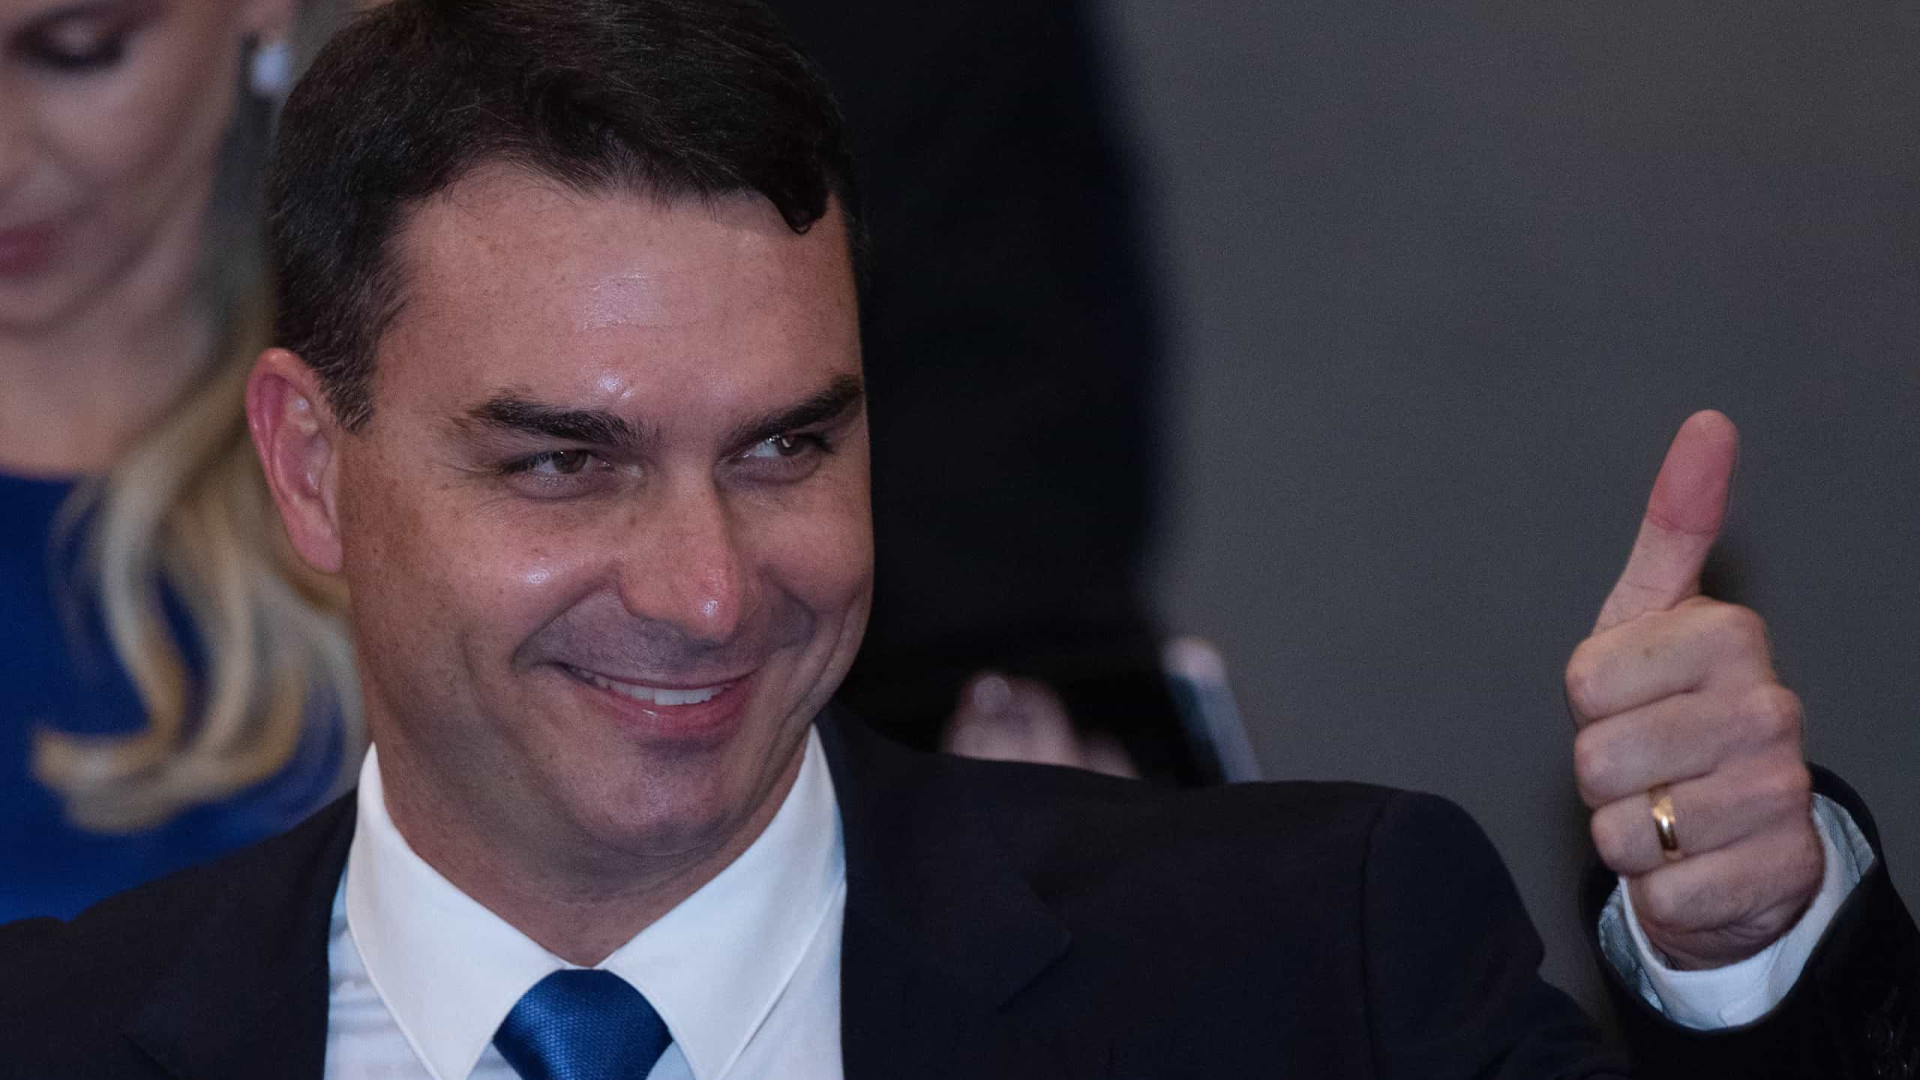 Flávio Bolsonaro confirma reunião do pai com Marcos do Val: 'nenhum crime', diz